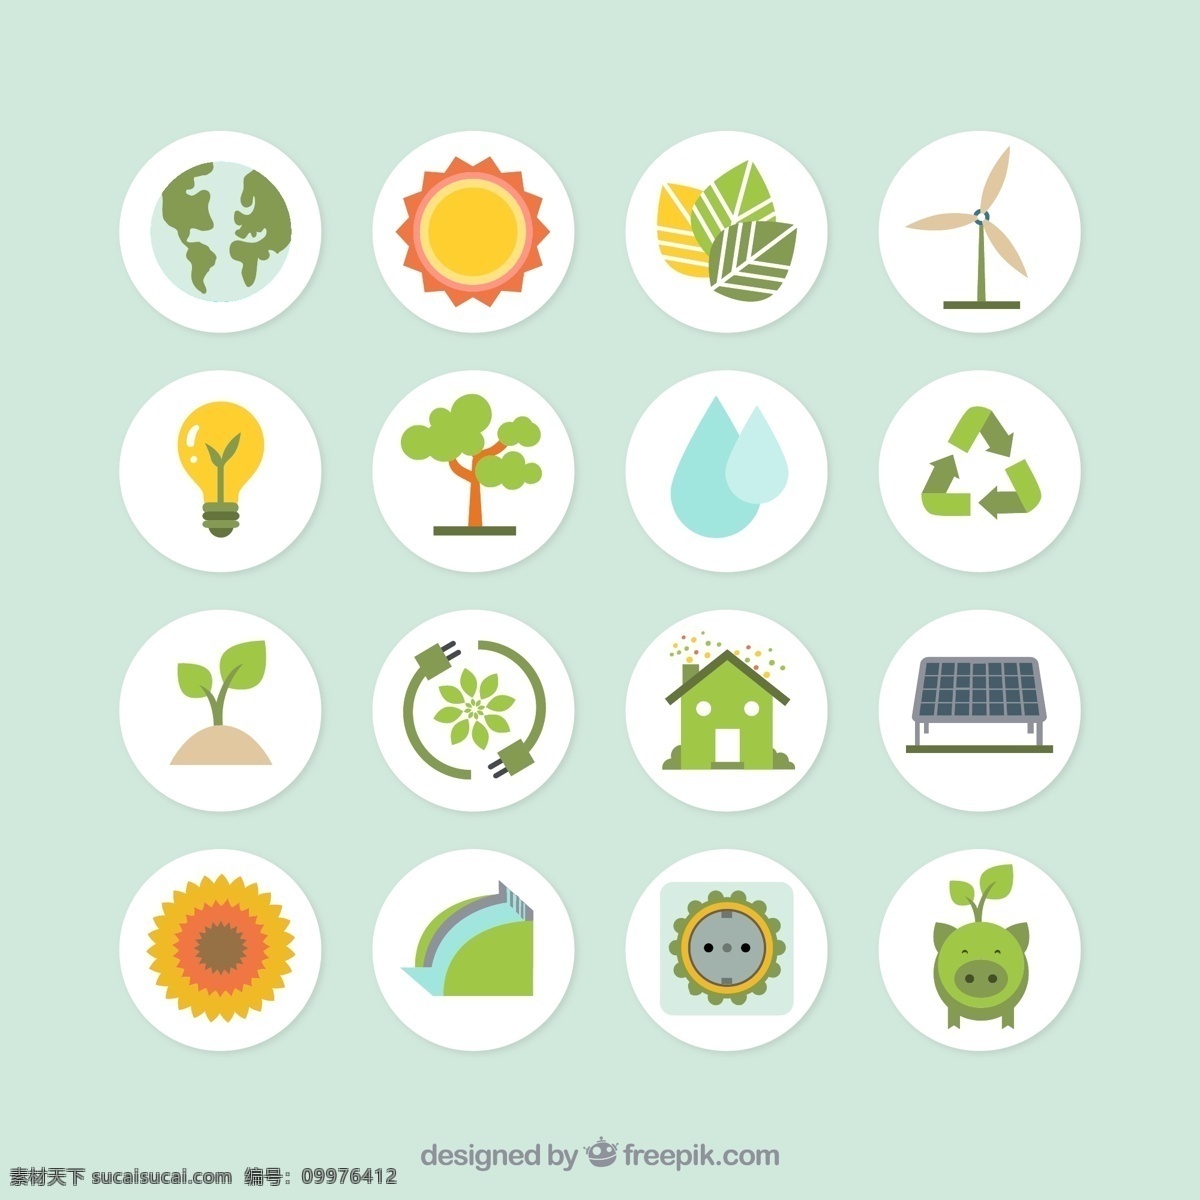 绿色生态 环保 图标 矢量 地球 太阳 树叶 发电风车 灯泡 能源 树木 水 可循环标志 绿芽 房屋 太阳能 生态环保 矢量图